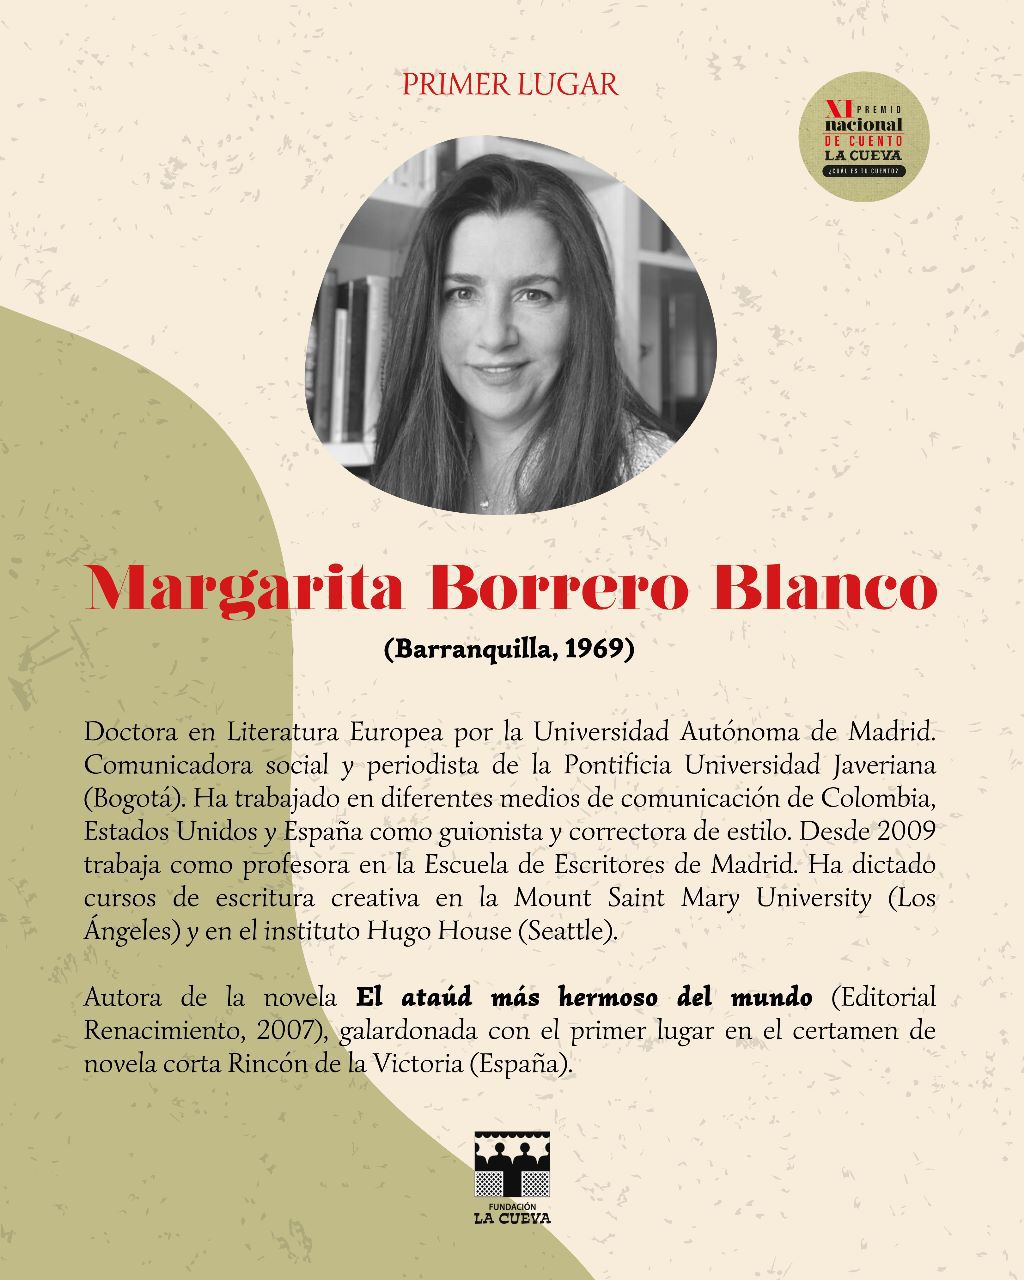 Póster oficial. María Margarita Borrero Blanco, ganadora del primer puesto del XI Premio Nacional de Cuento La Cueva. (Fundación La Cueva).